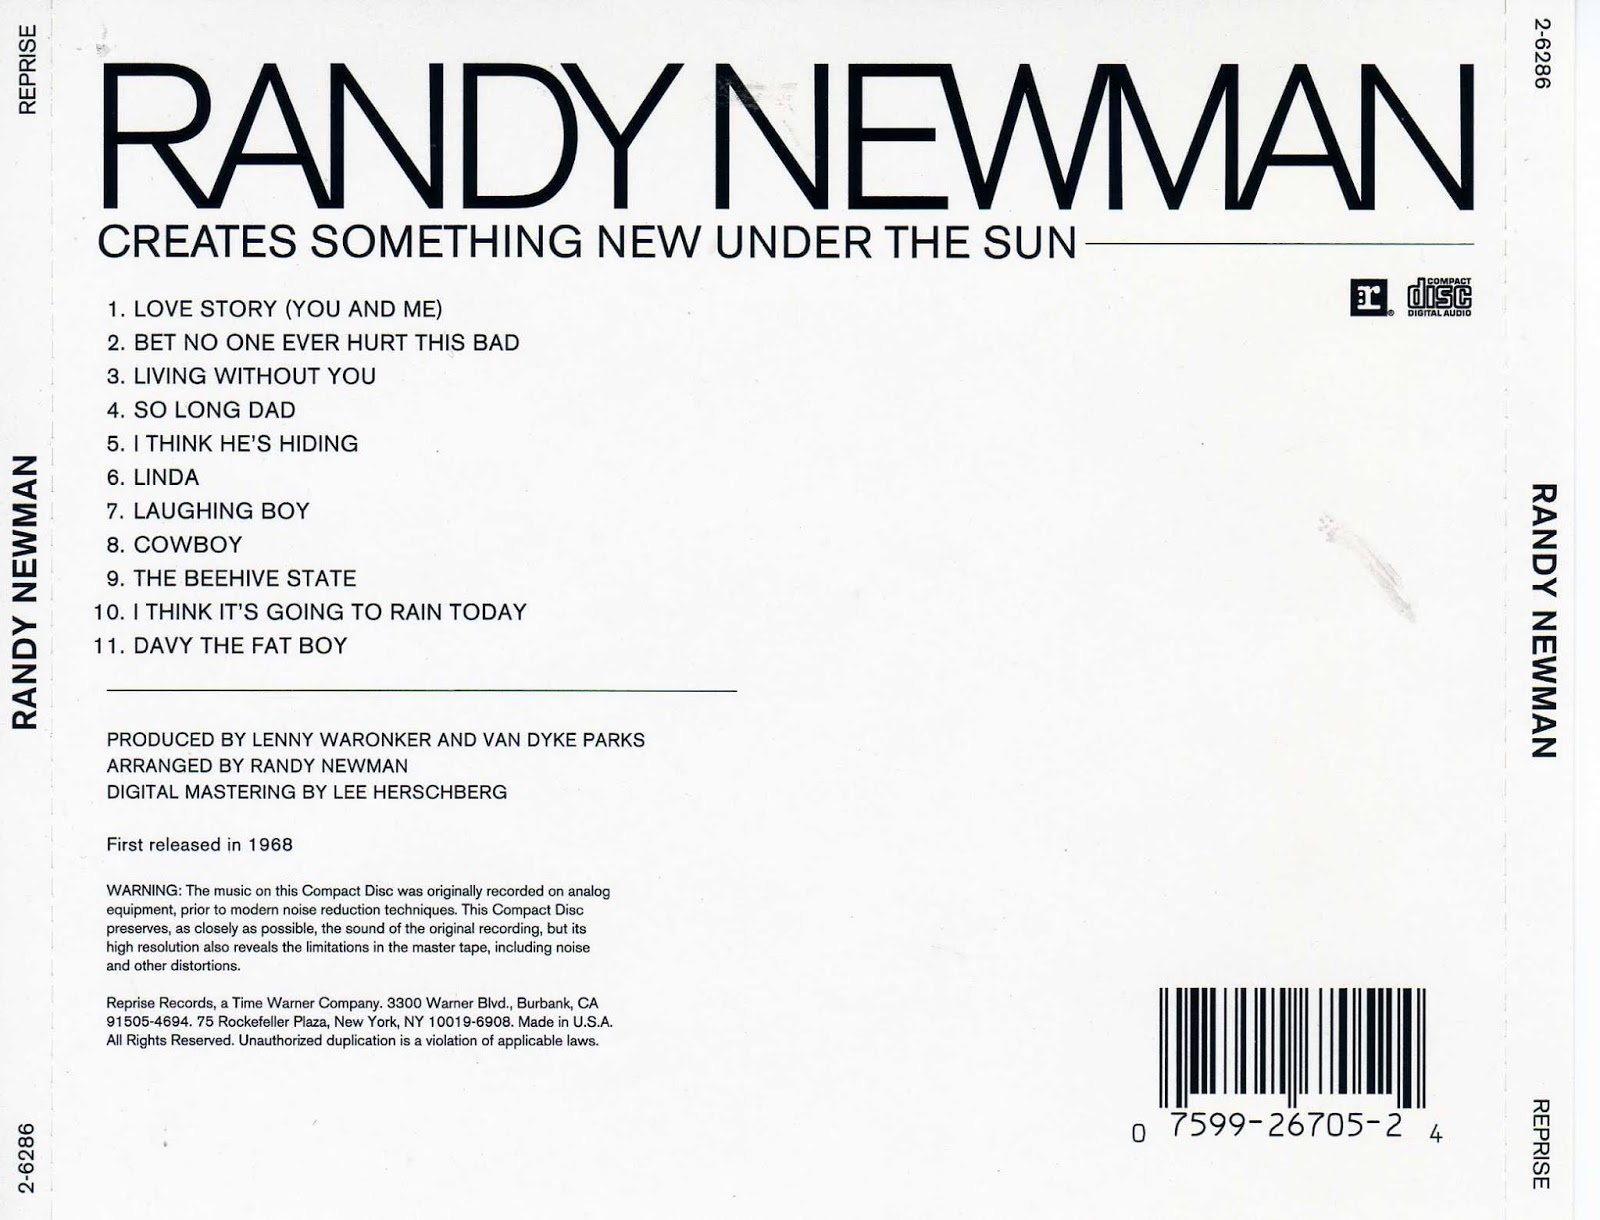 Randy newman discography rar